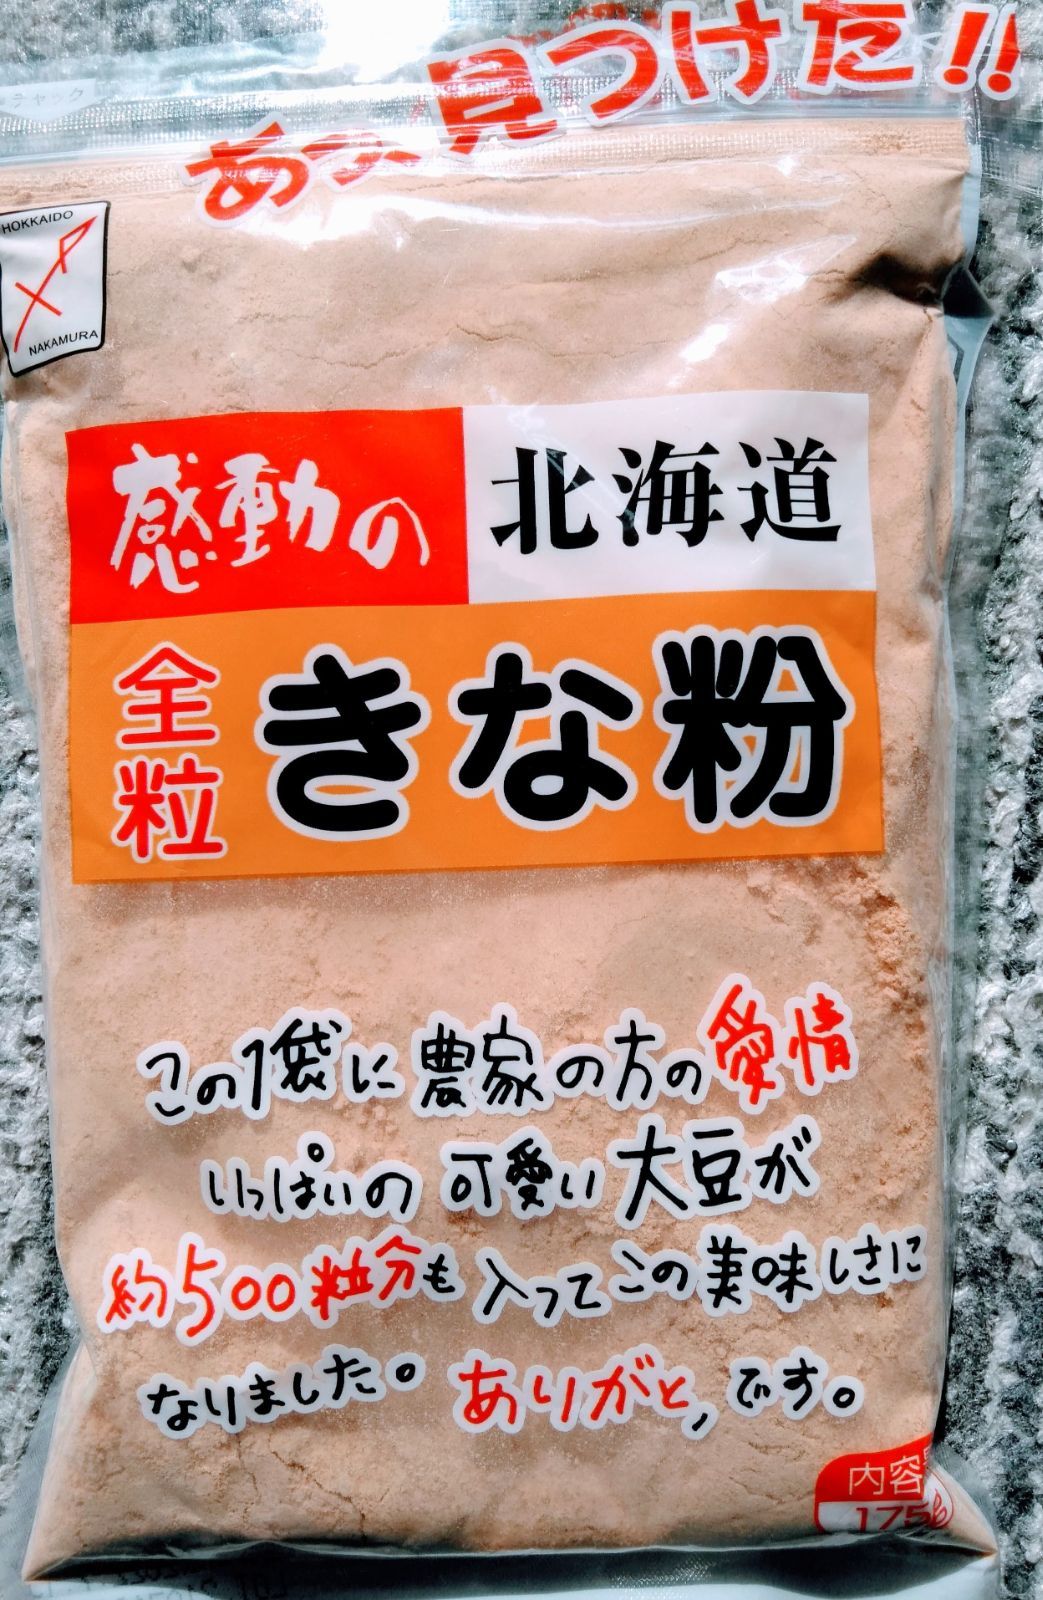 日本メーカー新品 ♡北海道産大豆100%♡坂口製粉♡焙煎丸大豆♡きな粉♡175g♡3袋♡健康食品♡